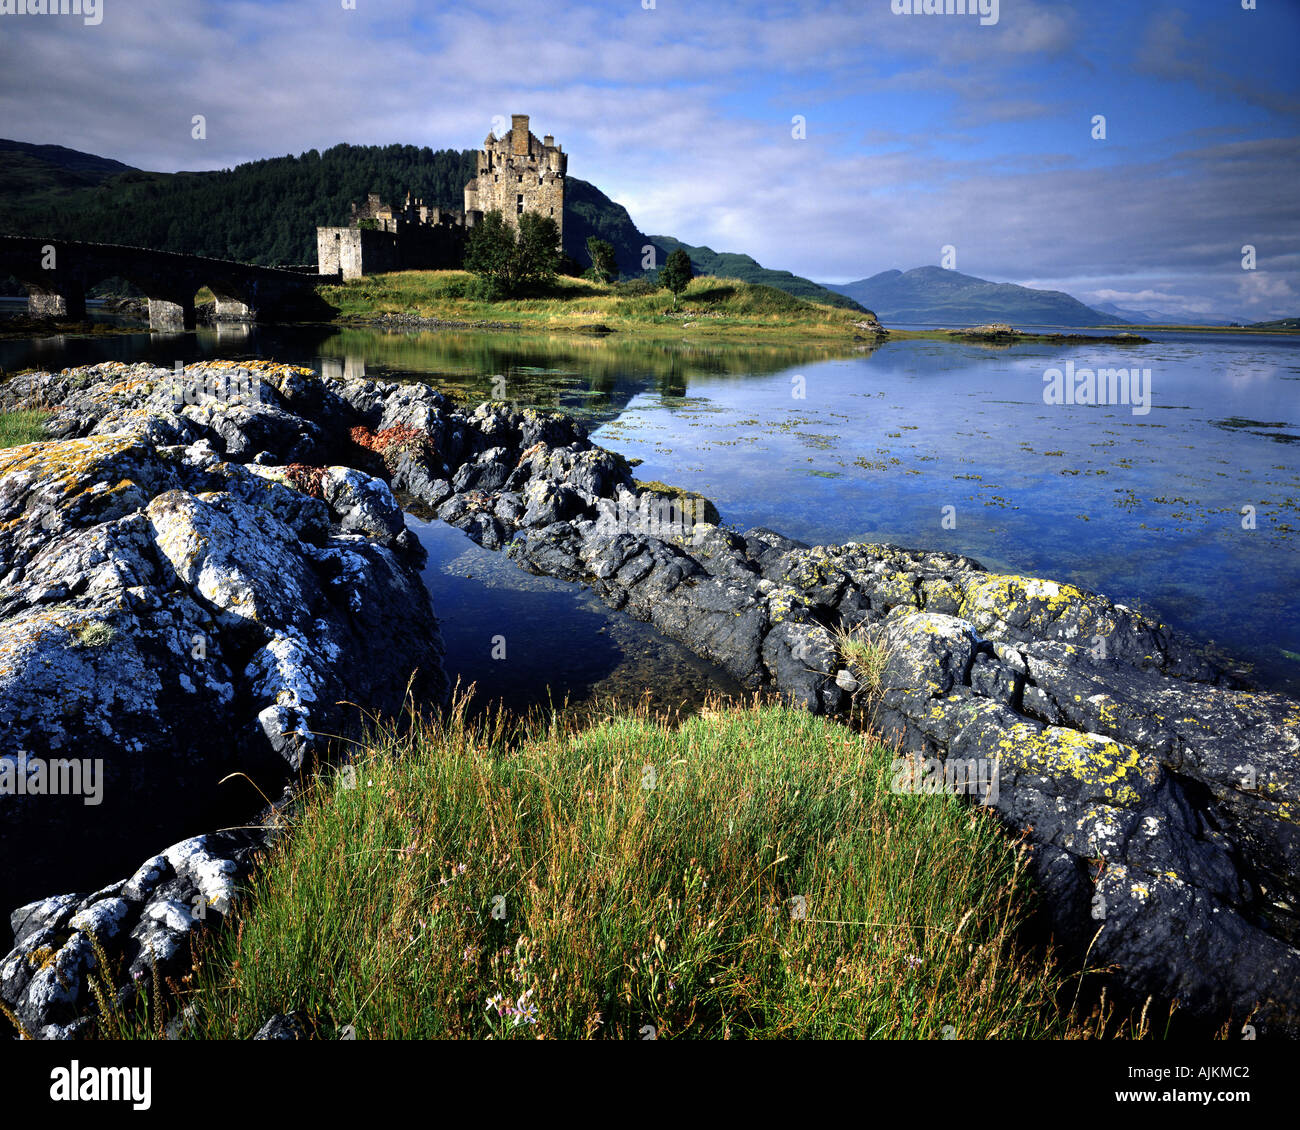 GB - Ecosse : le château d'Eilean Donan dans les Highlands Banque D'Images